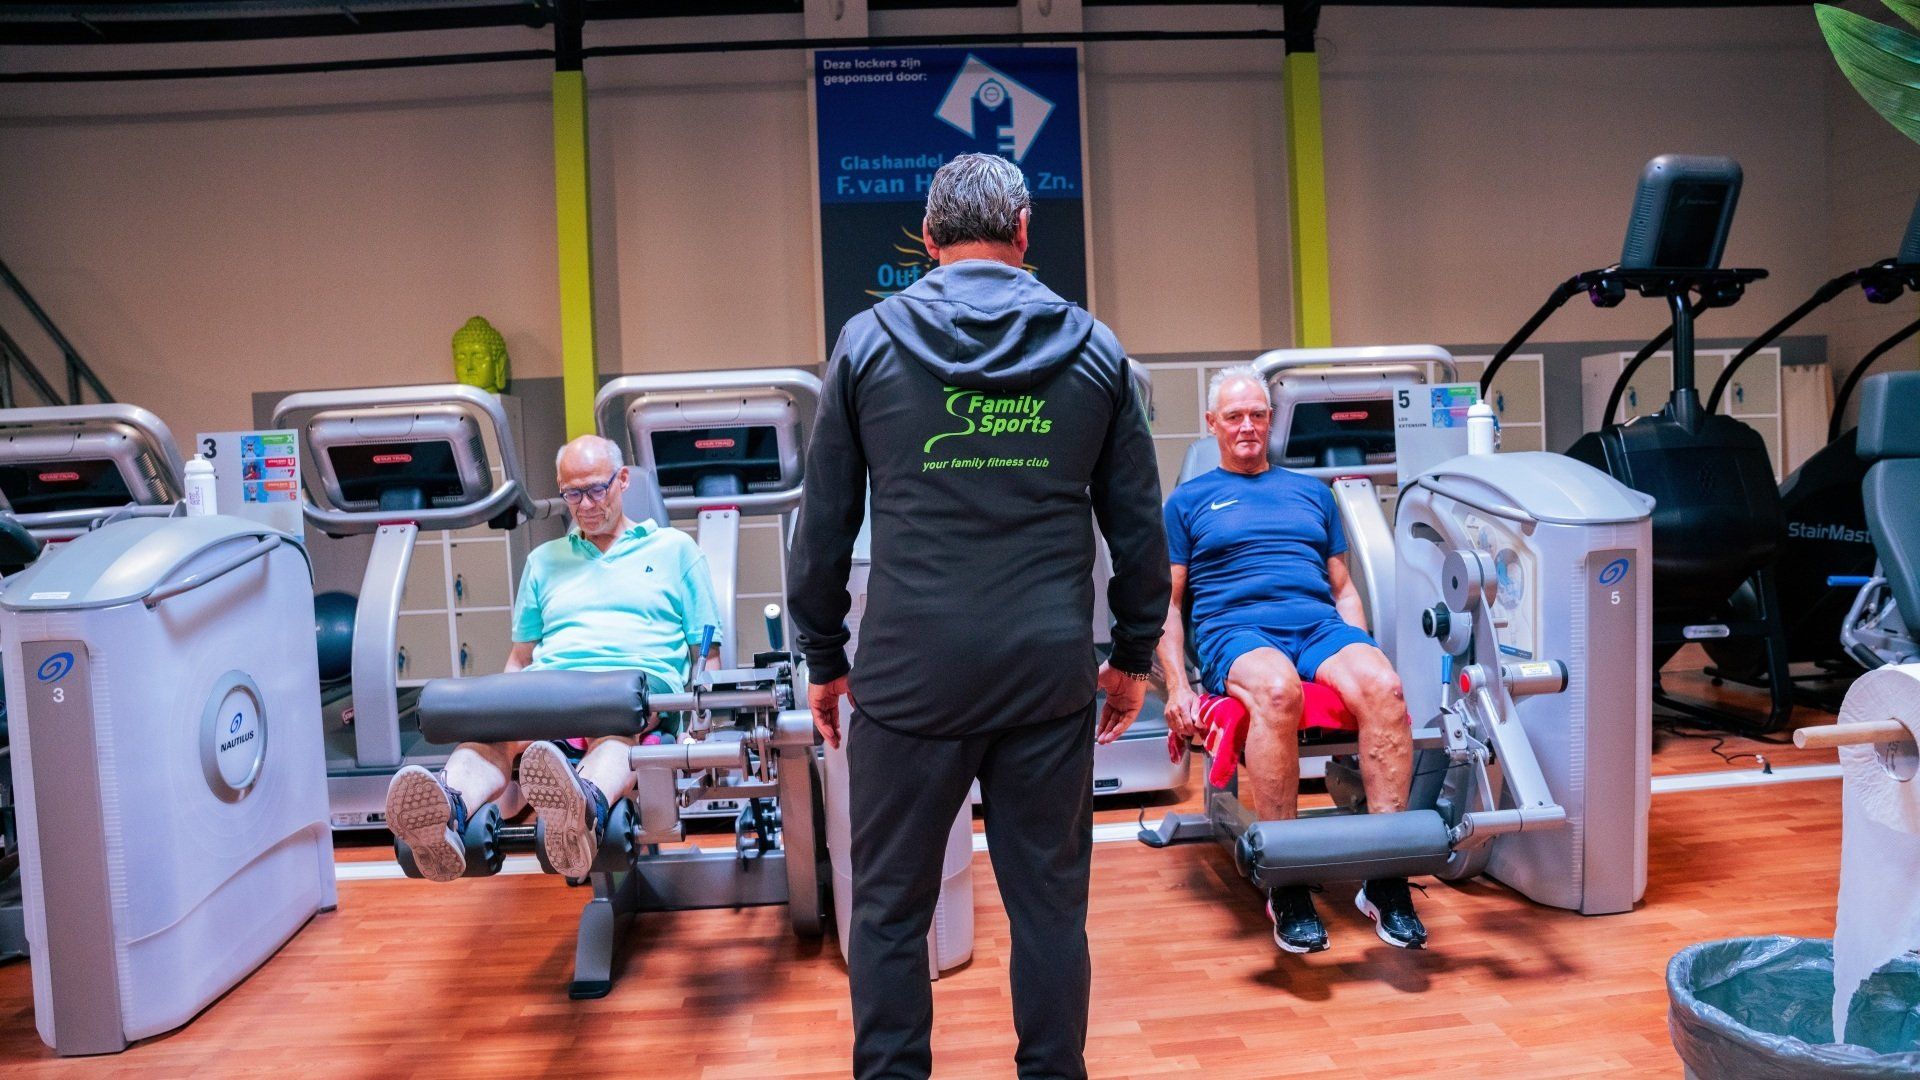 Een man staat voor een groep mensen die op fitnessapparaten in een sportschool zitten.